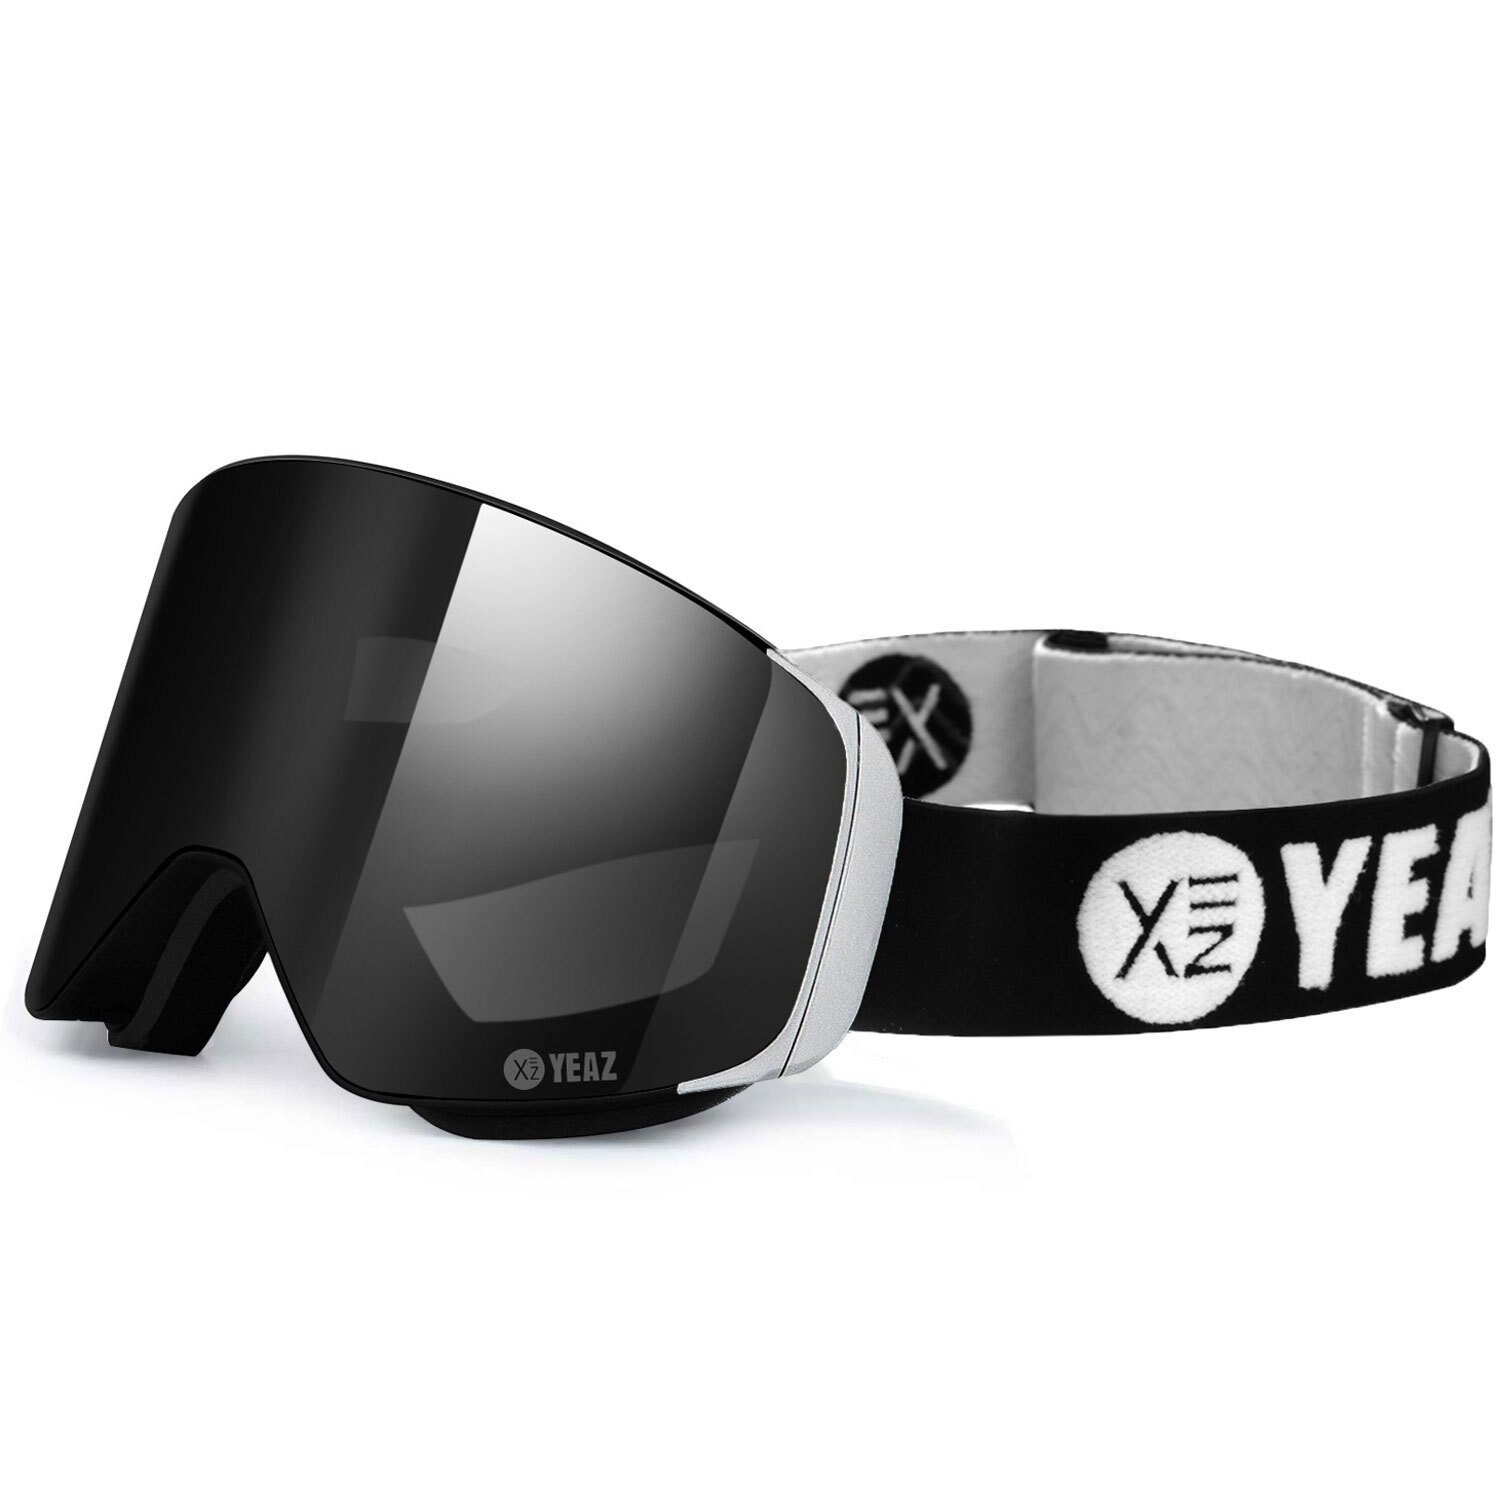 YEAZ schwarz/silber, magnet-ski-snowboardbrille Gläser, Magnet-Wechsel-System für schwarz/silber APEX Skibrille